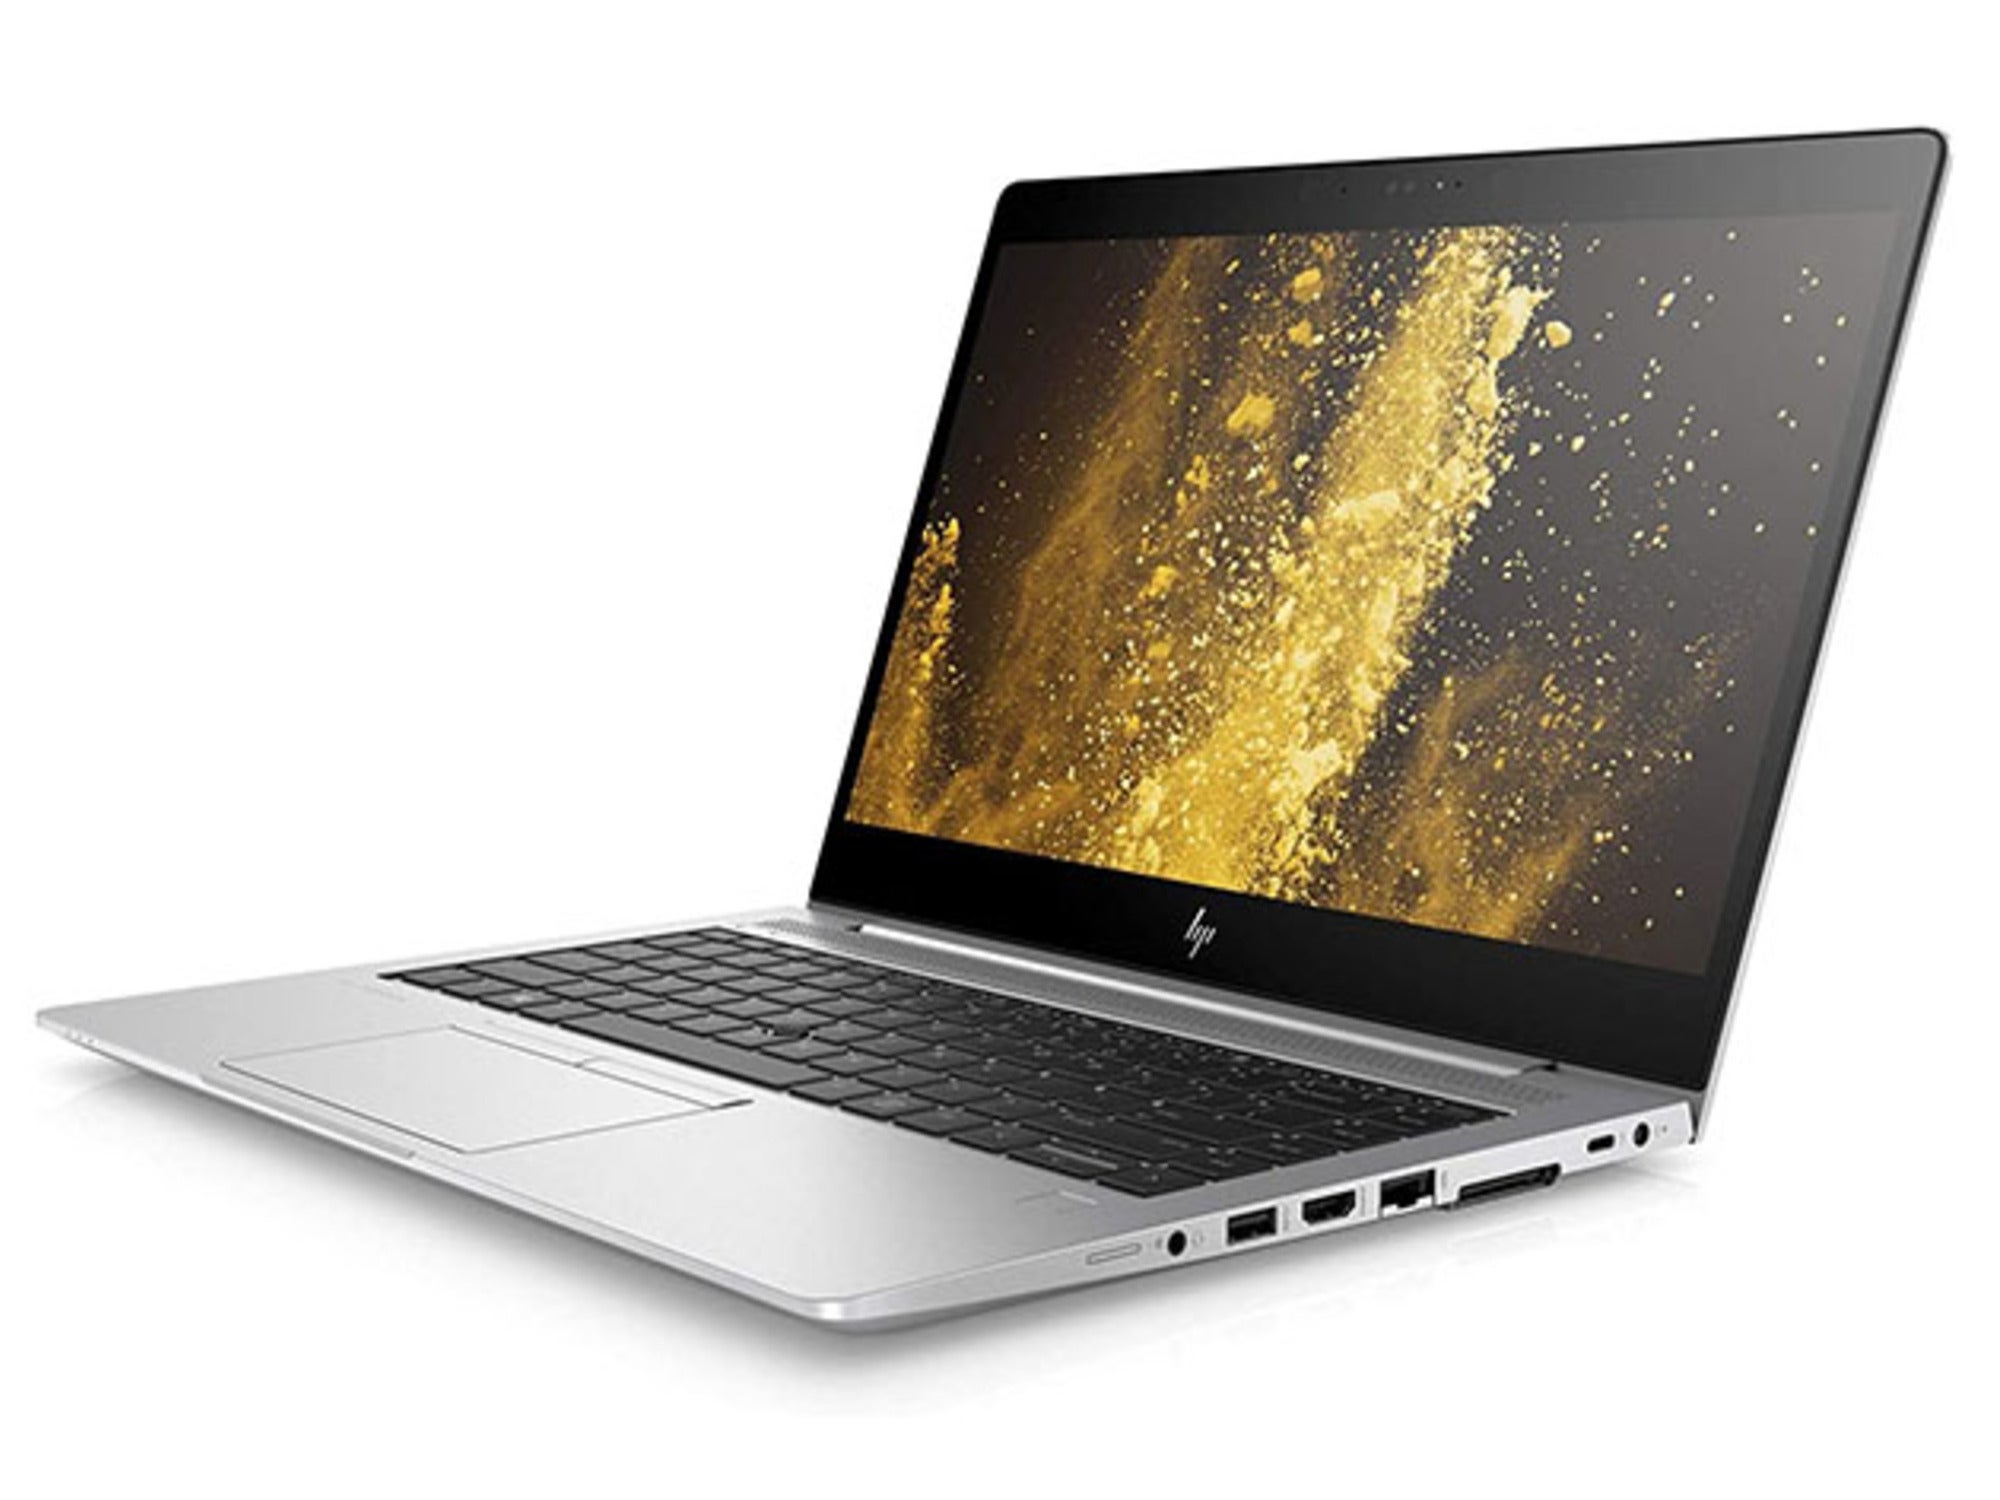 Obtenga una computadora portátil HP, una licencia de por vida para MS Office y capacitación en habilidades, todo por menos de $ 700